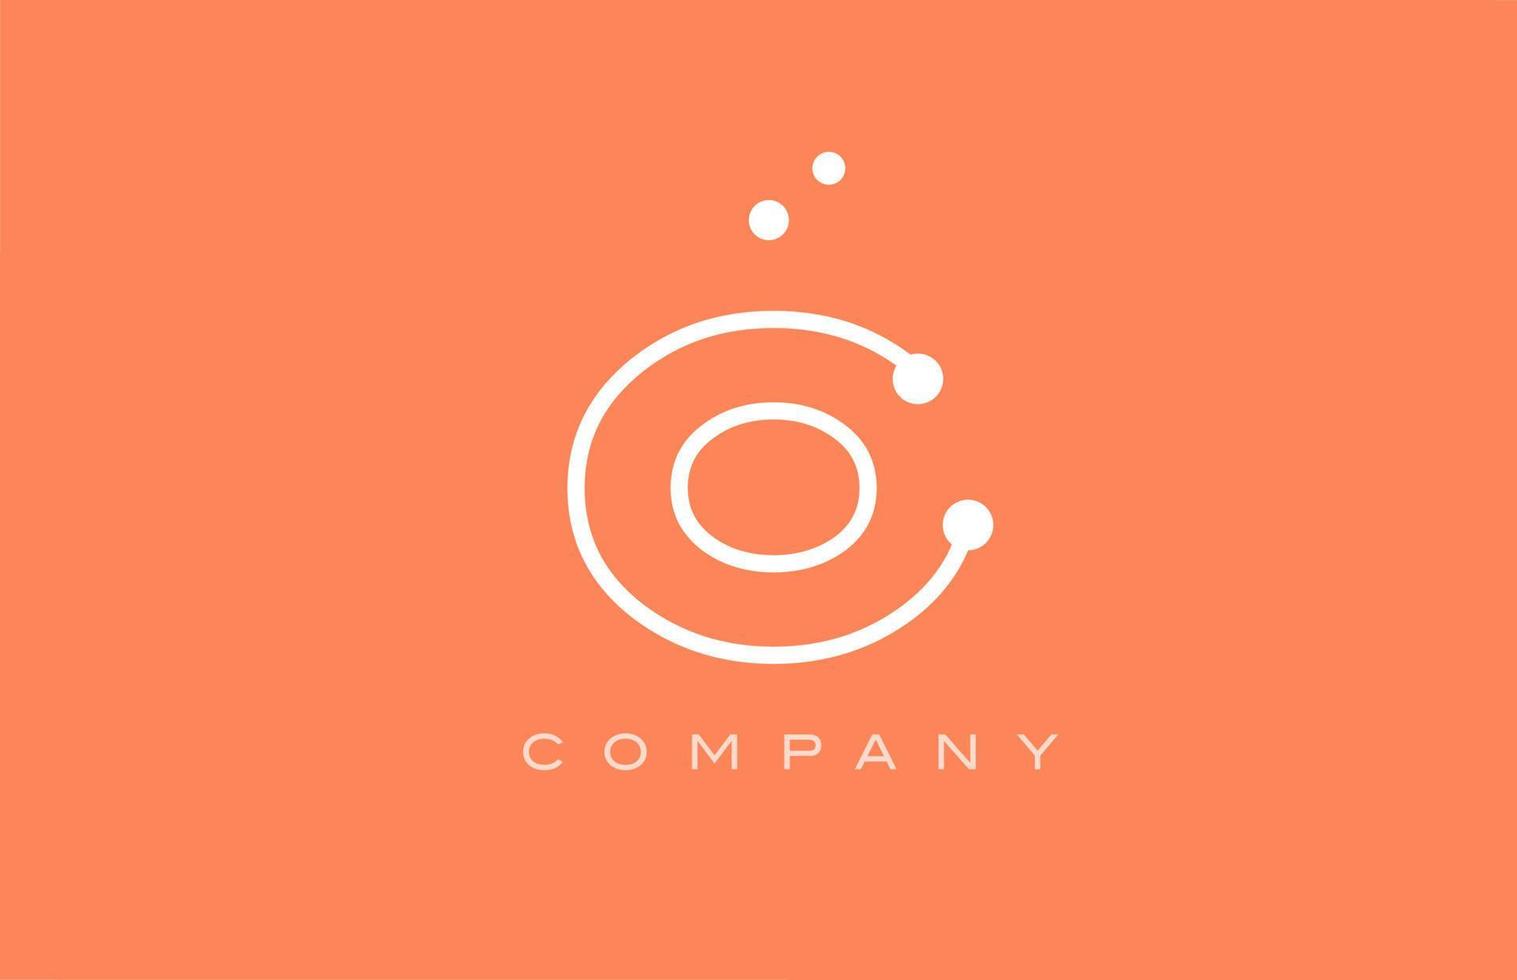 O naranja punto blanco línea alfabeto letra logo icono diseño. plantilla creativa para negocios y empresas. vector